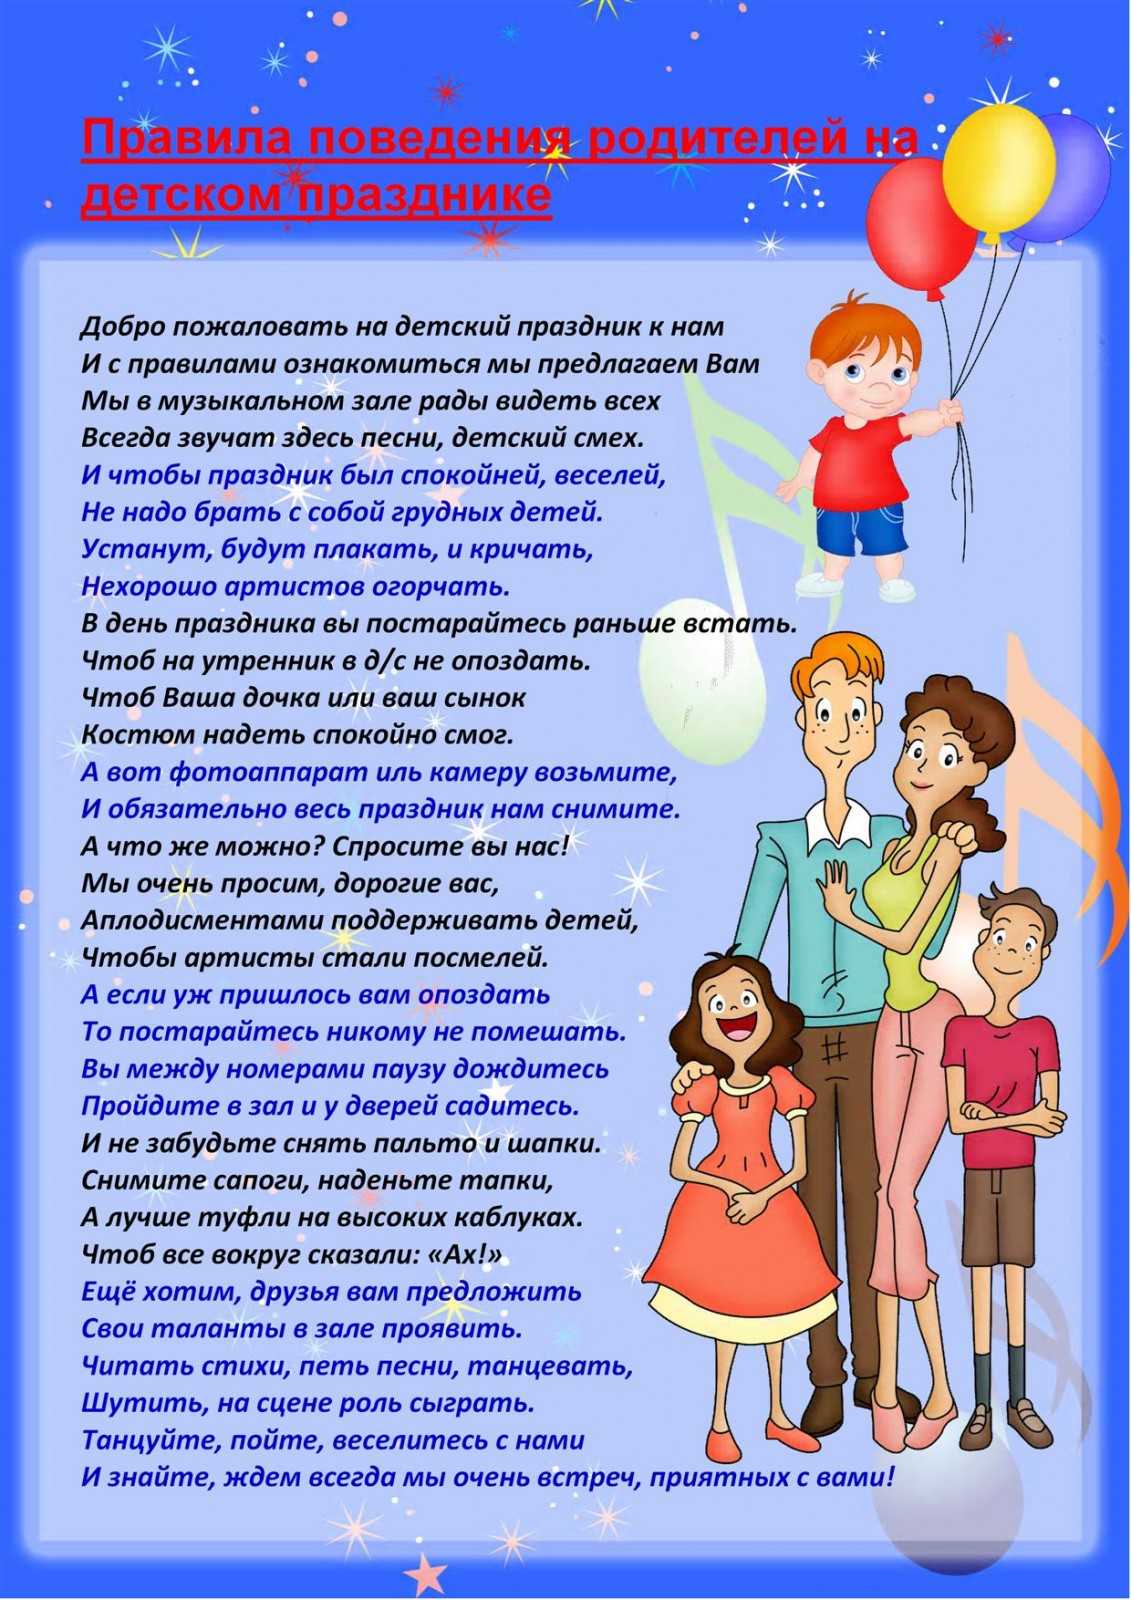 8 секретов воспитания от юлии павлюченковой – мамы одиннадцати детей, которая всё успевает